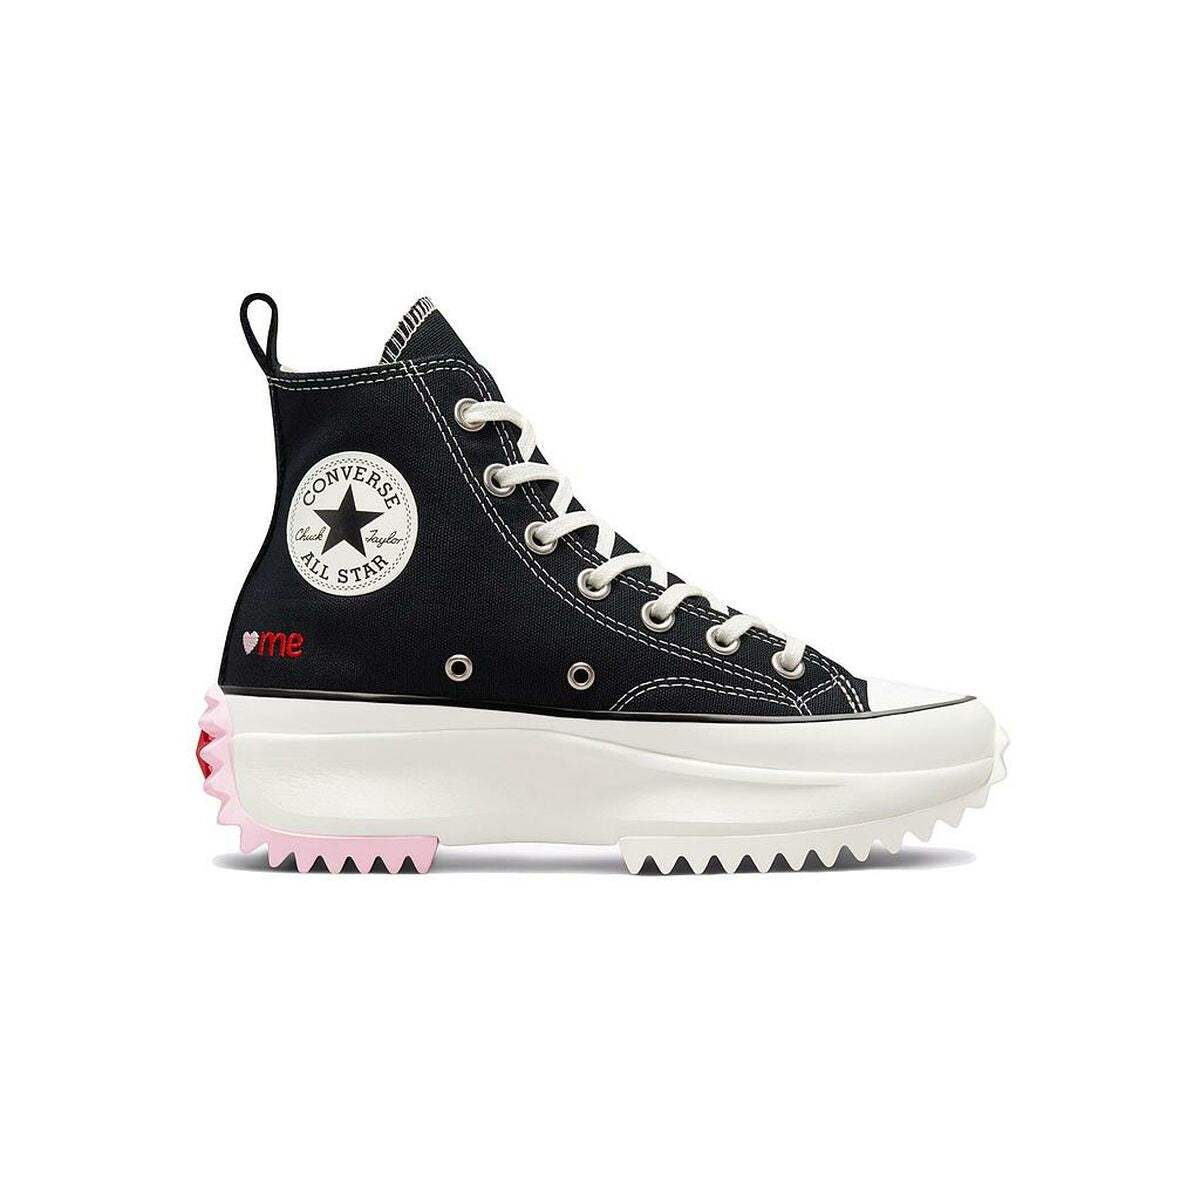 Chaussures de sport pour femme Converse RUN STAR HIKE A01598C Noir - Converse - Jardin D'Eyden - jardindeyden.fr